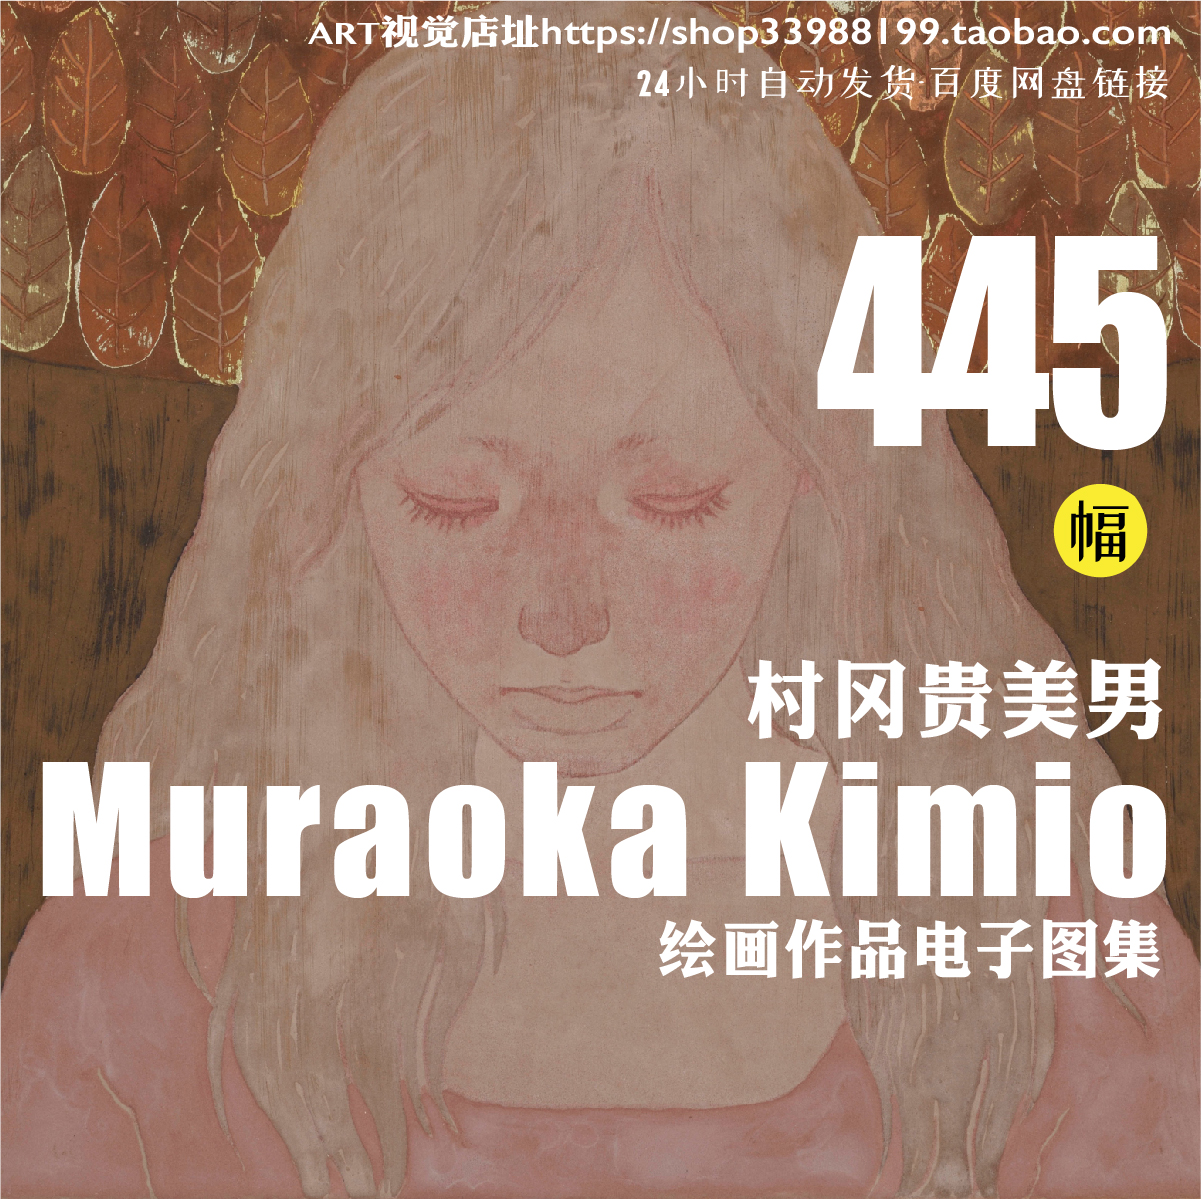 村冈贵美男日本和风 岩彩壁画电子版作品集诡异美术图片临摹素材